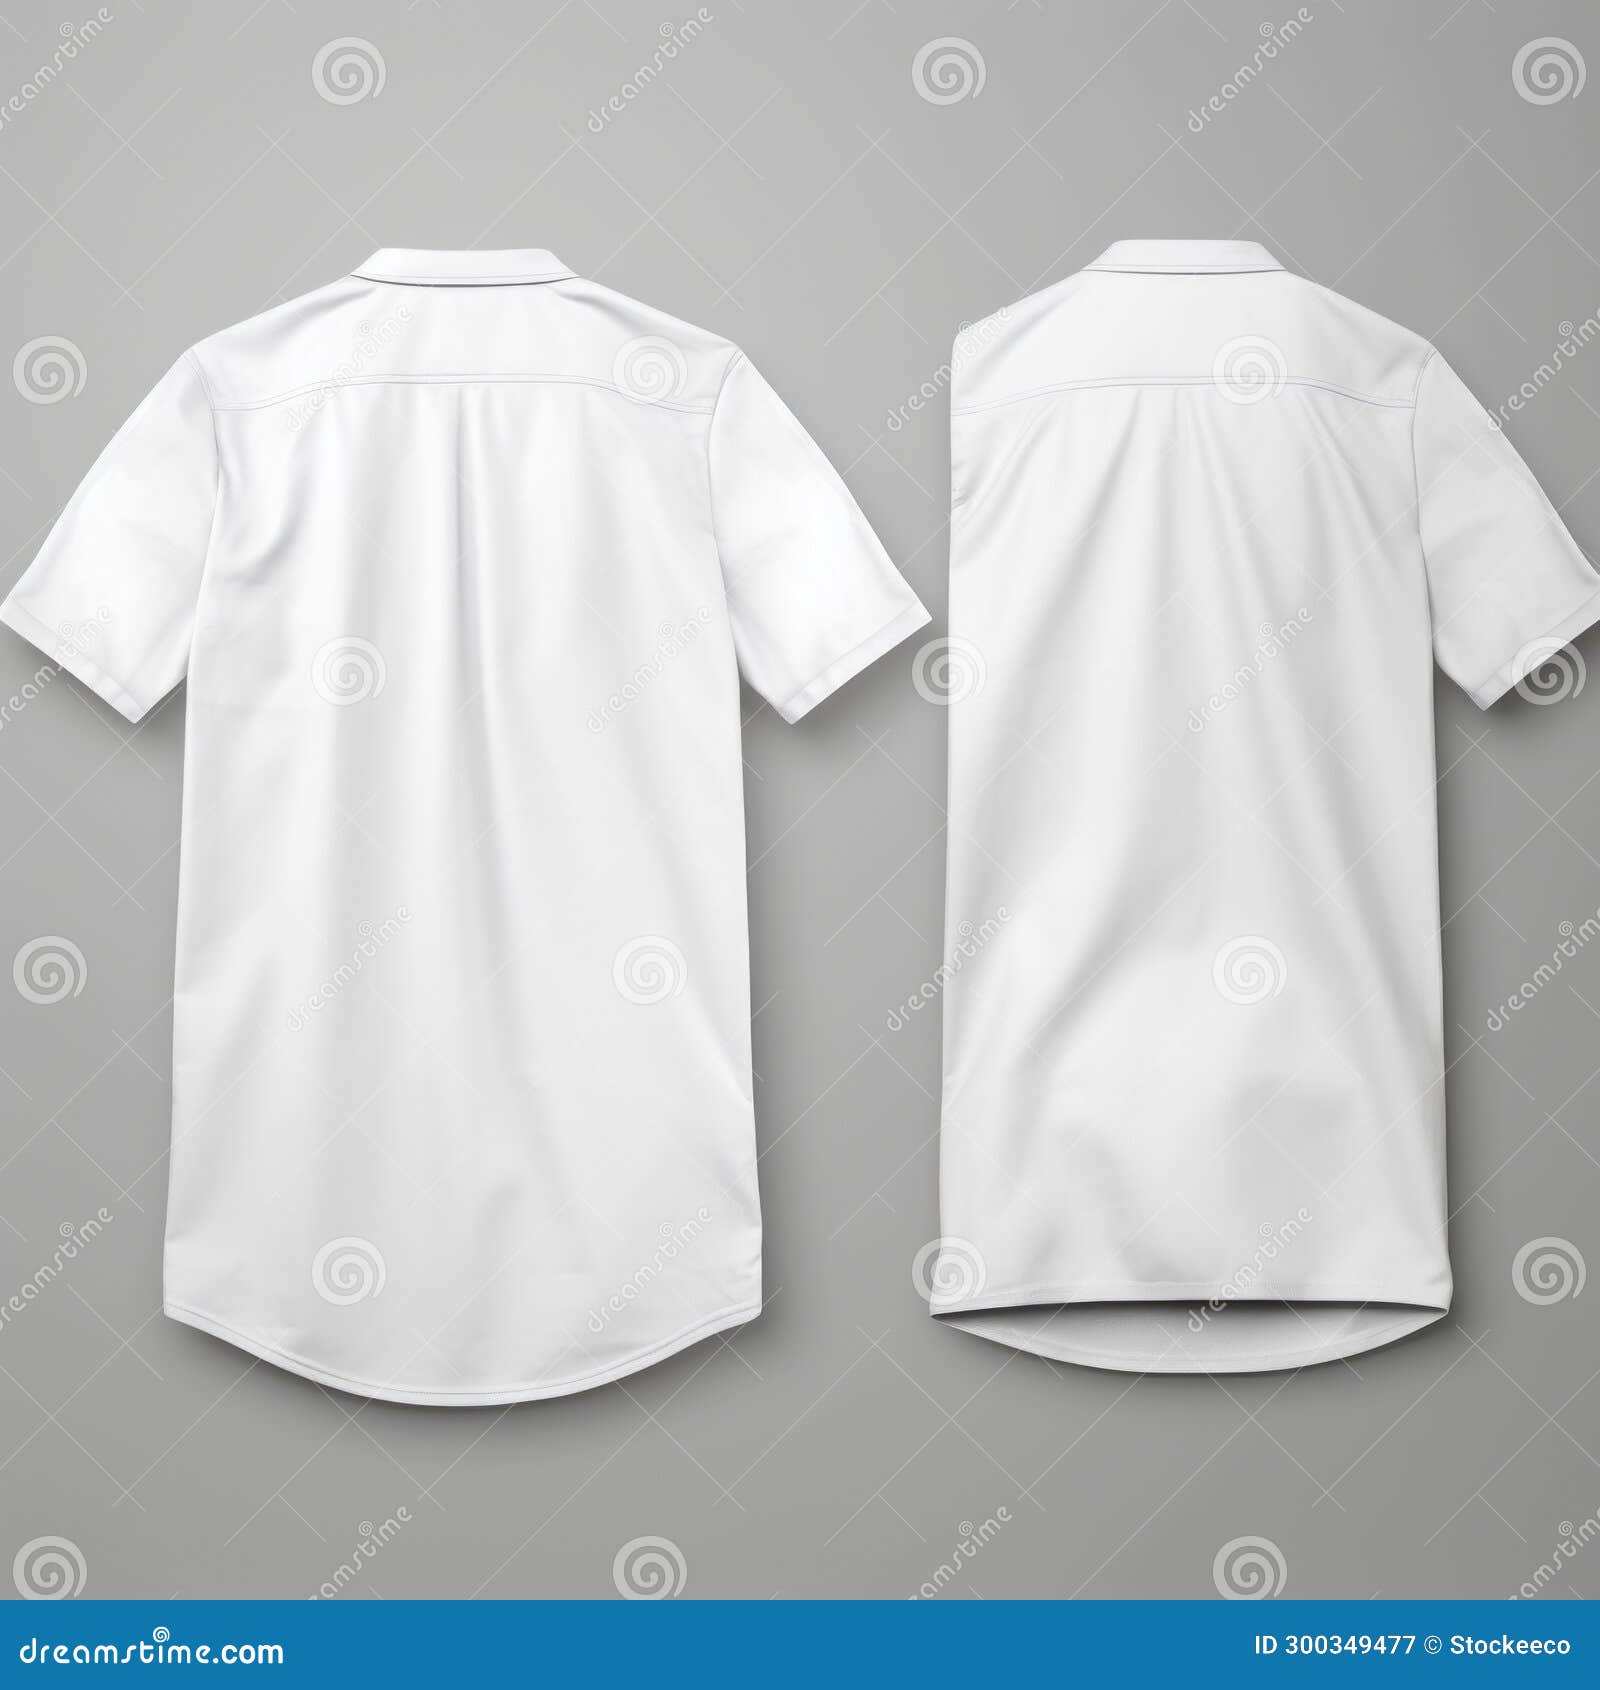 Detailed Shading White Shirt Back Mockups on Gray Background Stock ...